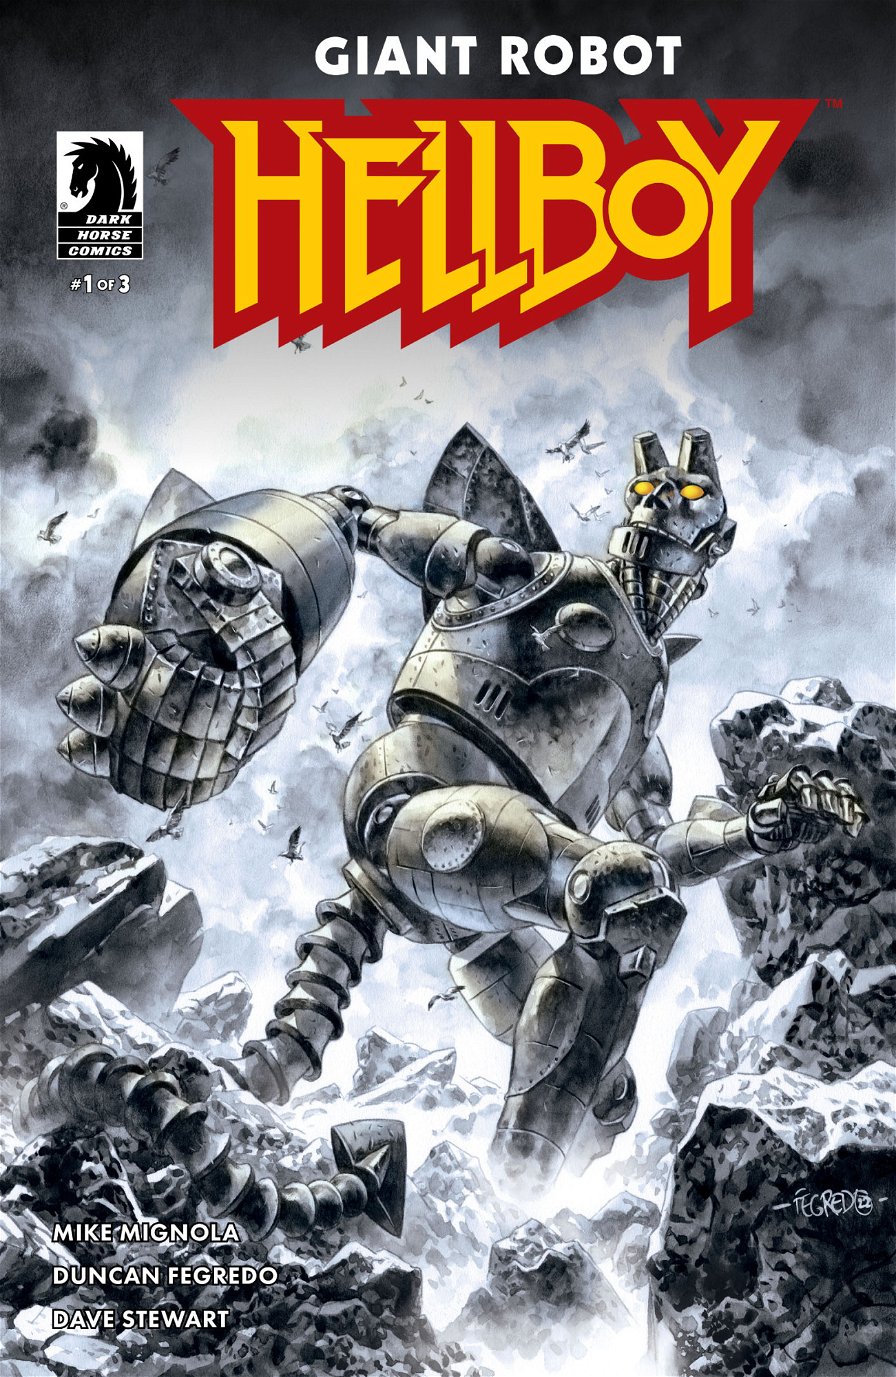 Giant Robot Hellboy - cover fumetto con Hellboy